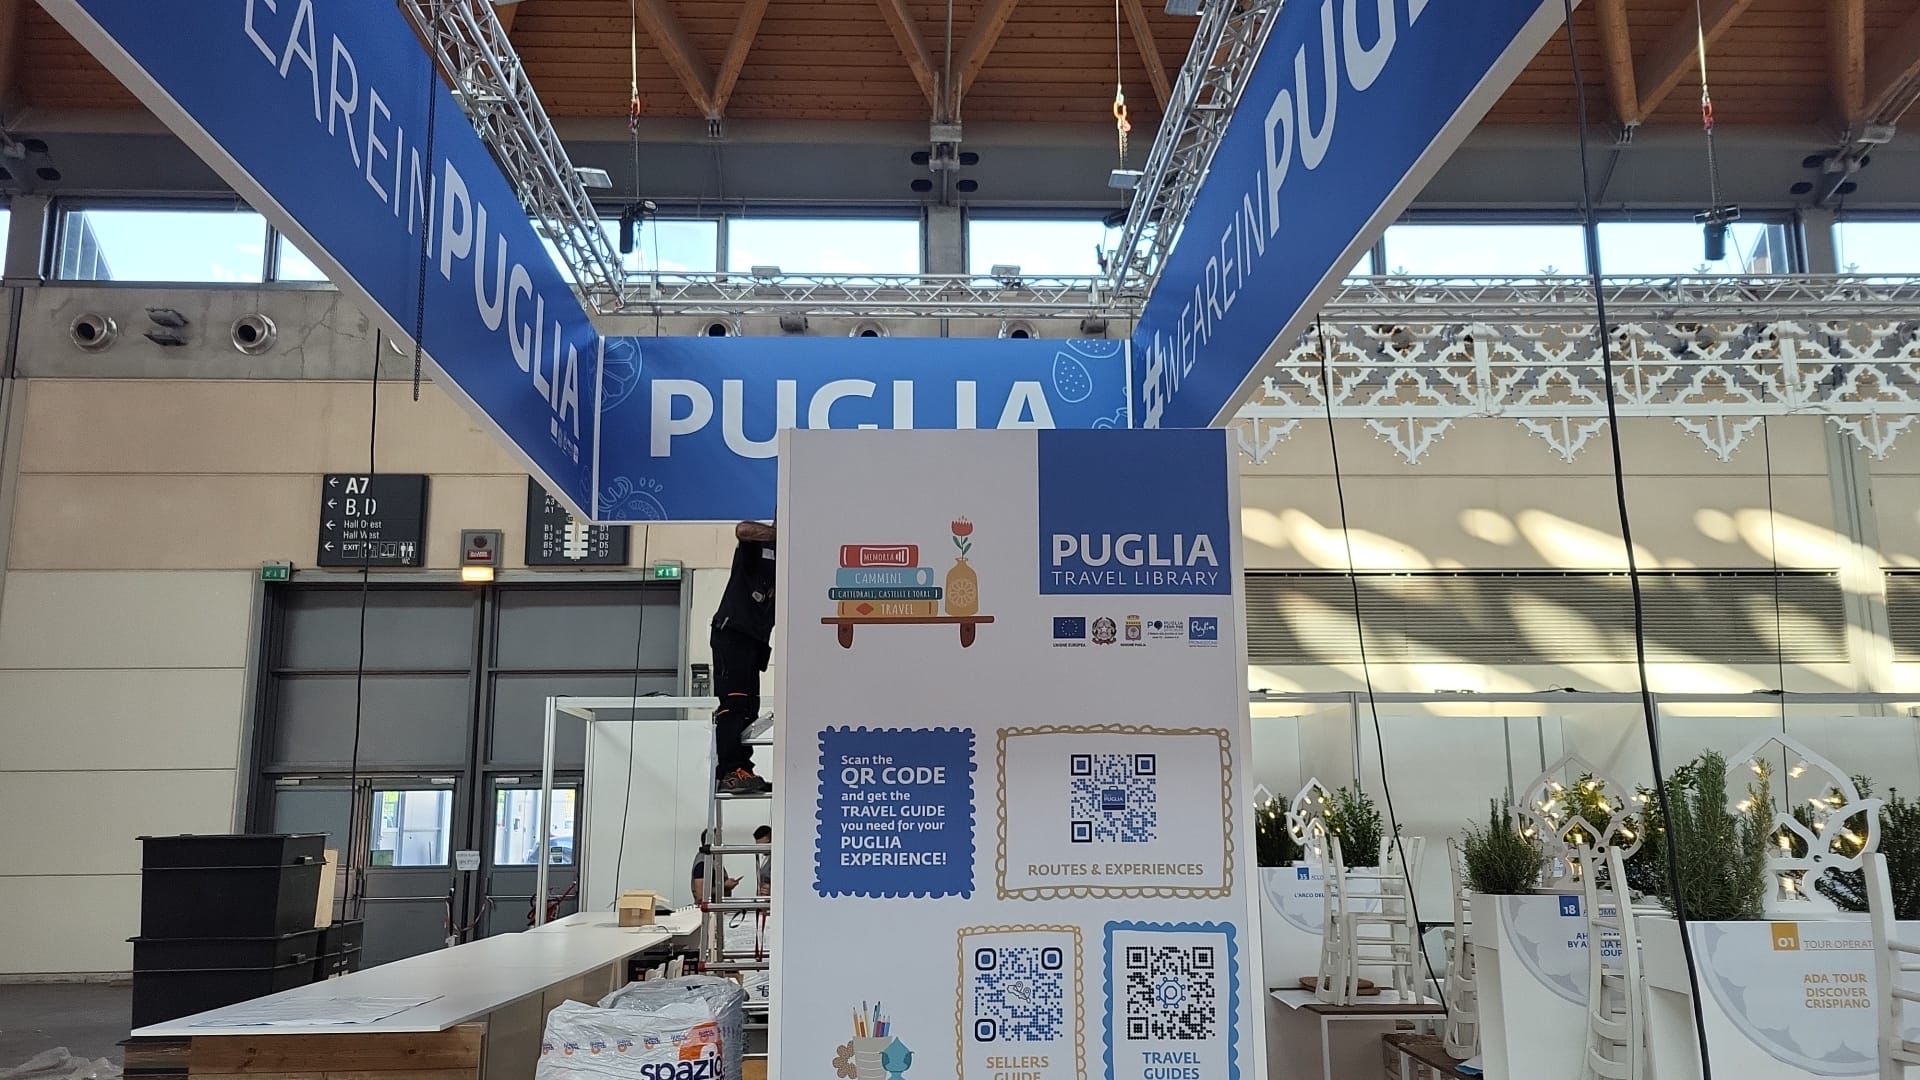 Galleria La Regione Puglia al TTG di Rimini, l’appuntamento per il mondo che viaggia e fa viaggiare - Diapositiva 3 di 5